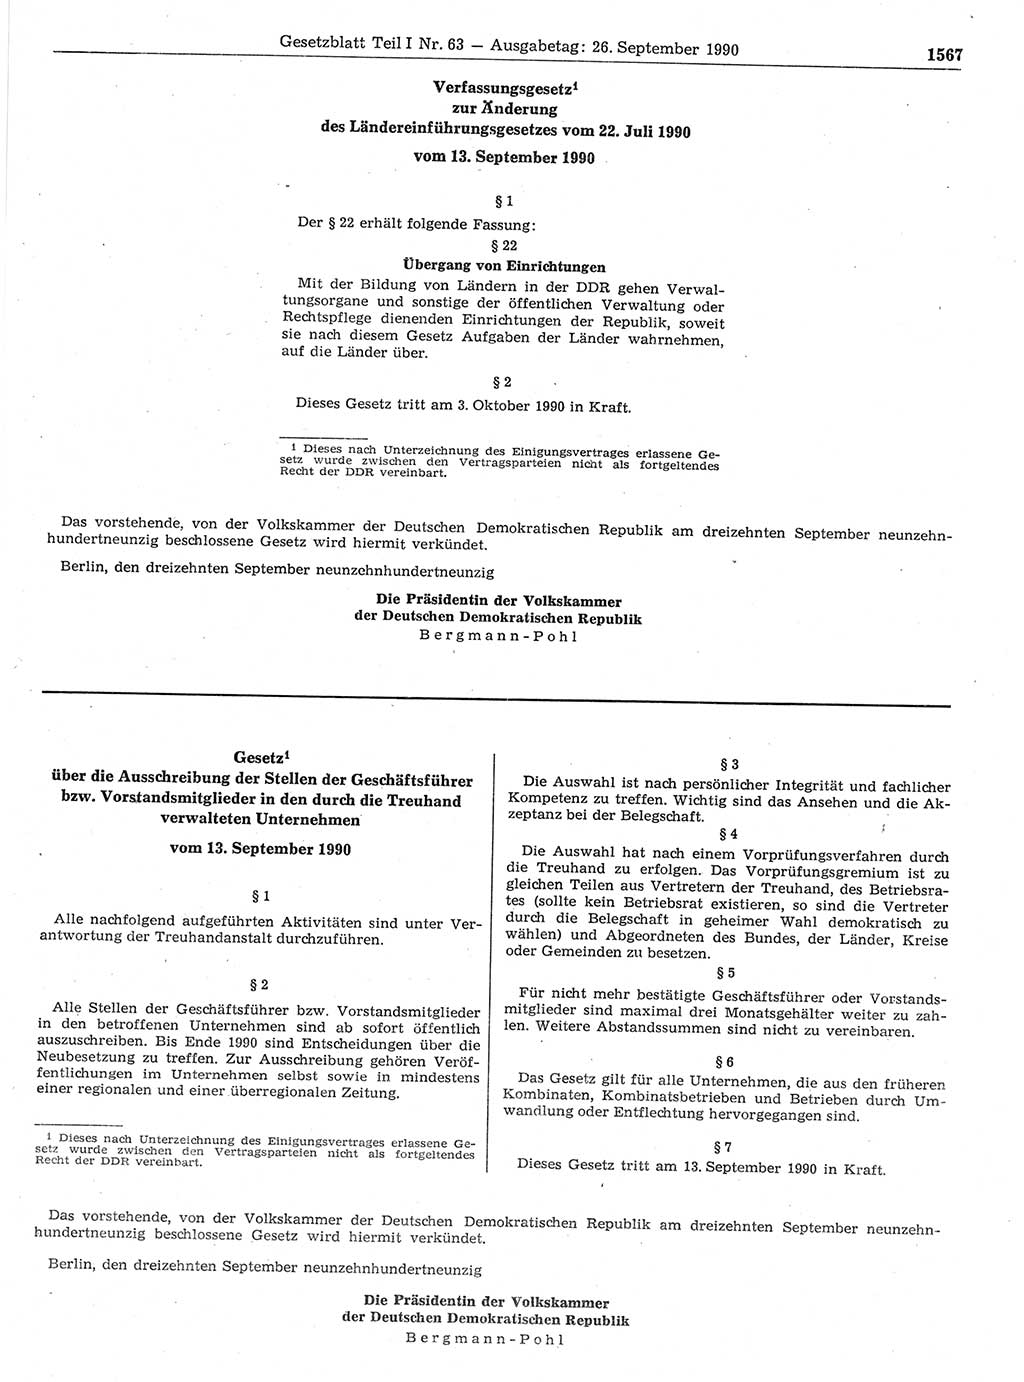 Gesetzblatt (GBl.) der Deutschen Demokratischen Republik (DDR) Teil Ⅰ 1990, Seite 1567 (GBl. DDR Ⅰ 1990, S. 1567)